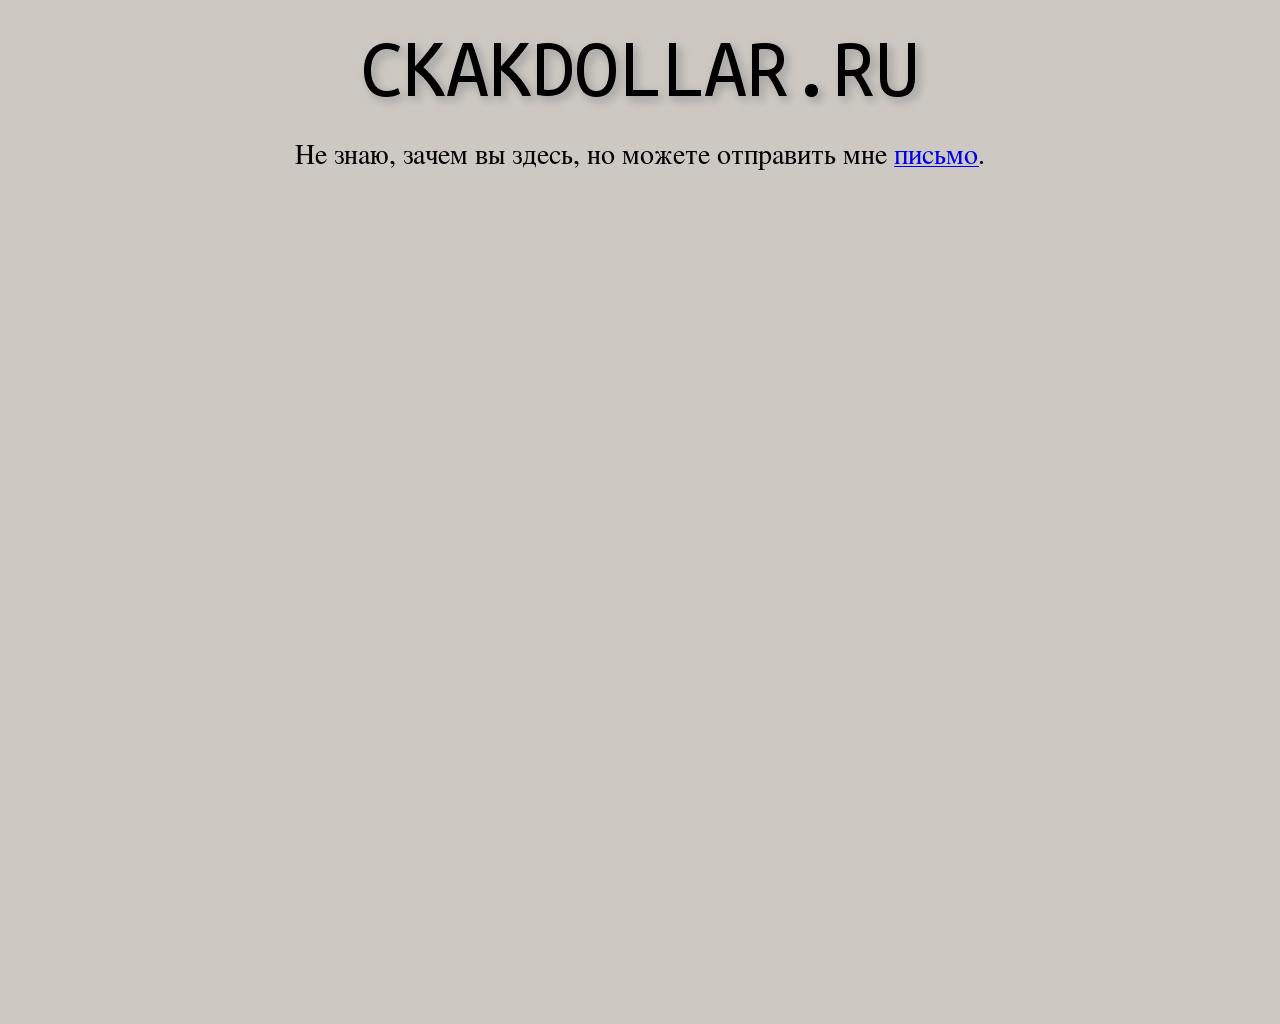 Изображение сайта ckakdollar.ru в разрешении 1280x1024